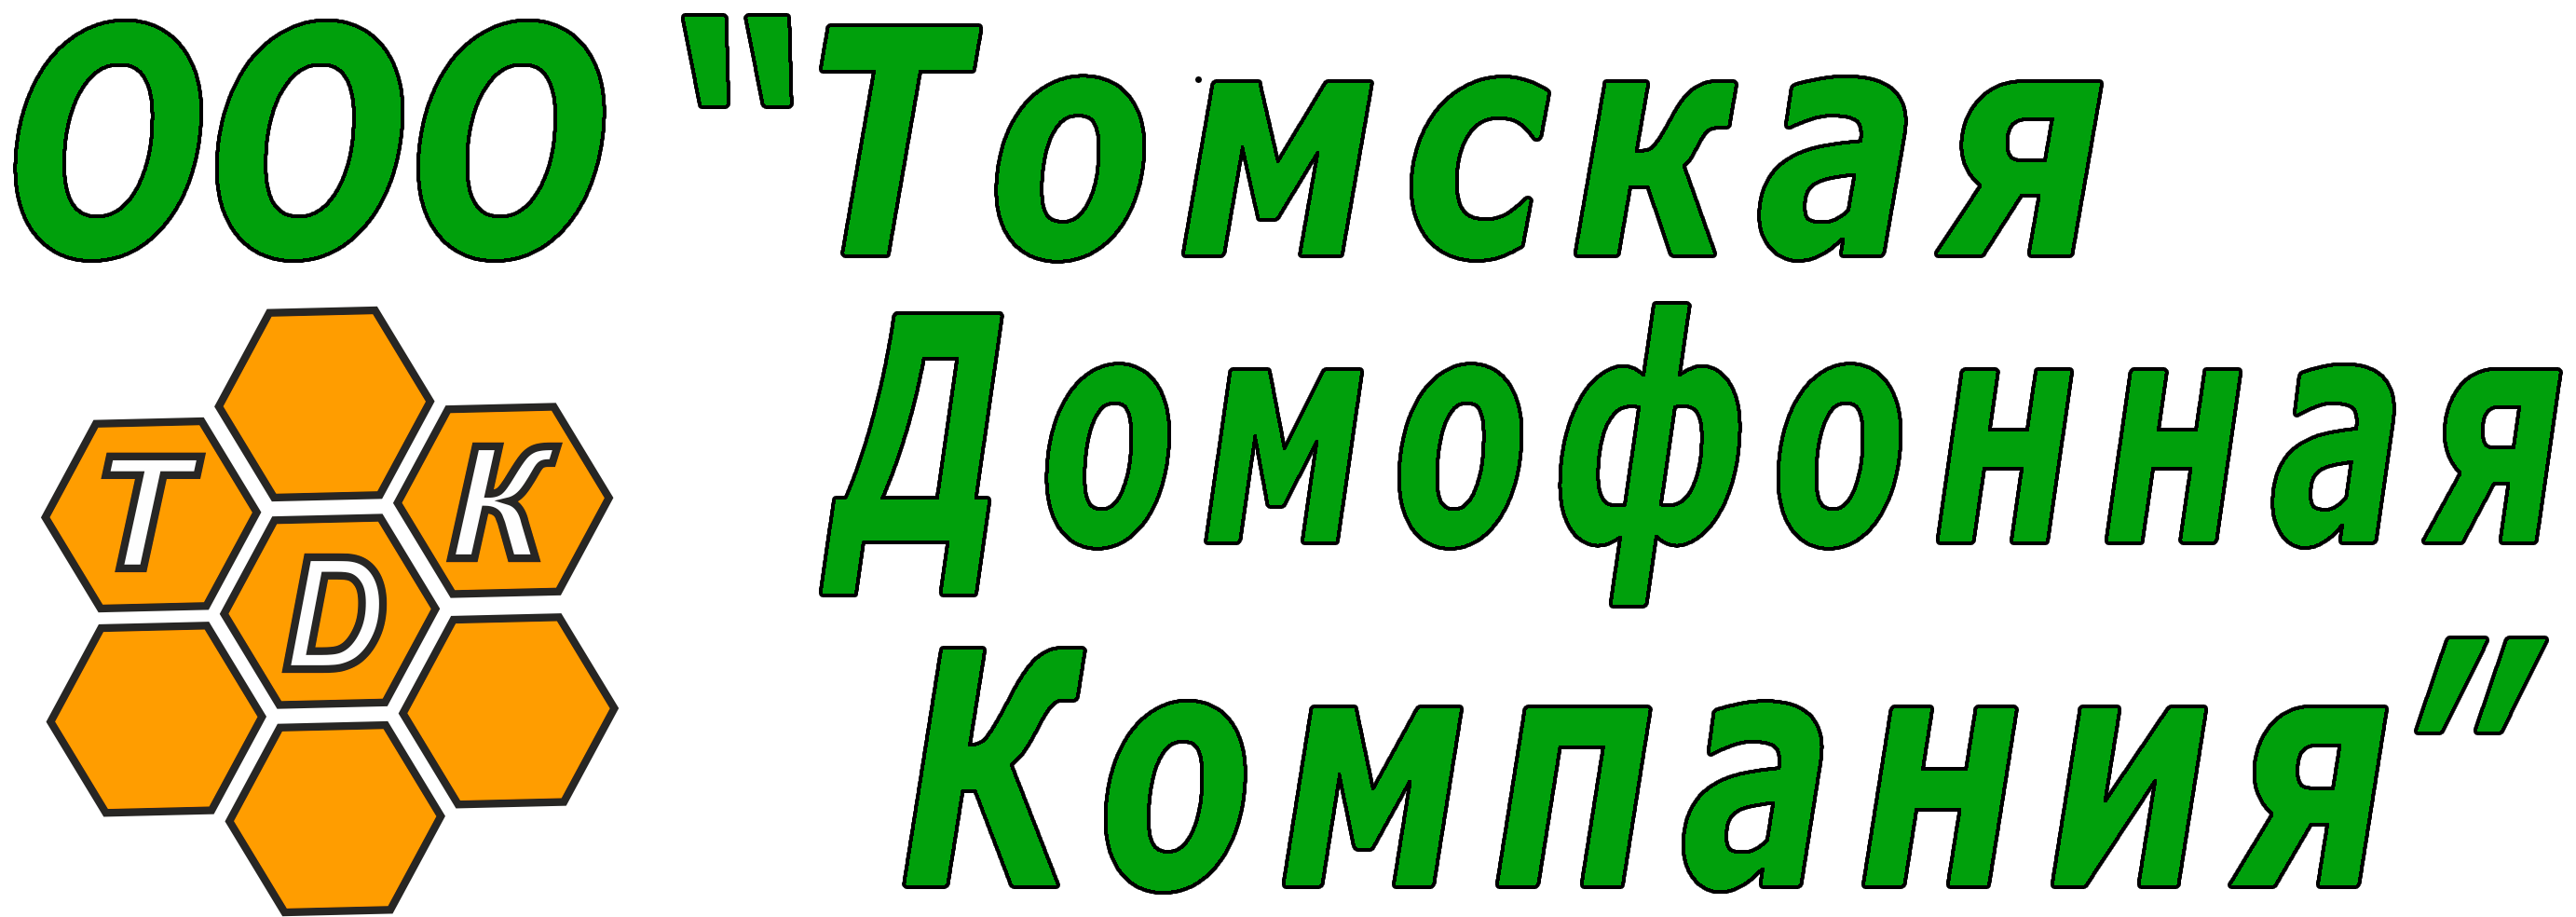 Томская домофонная компания